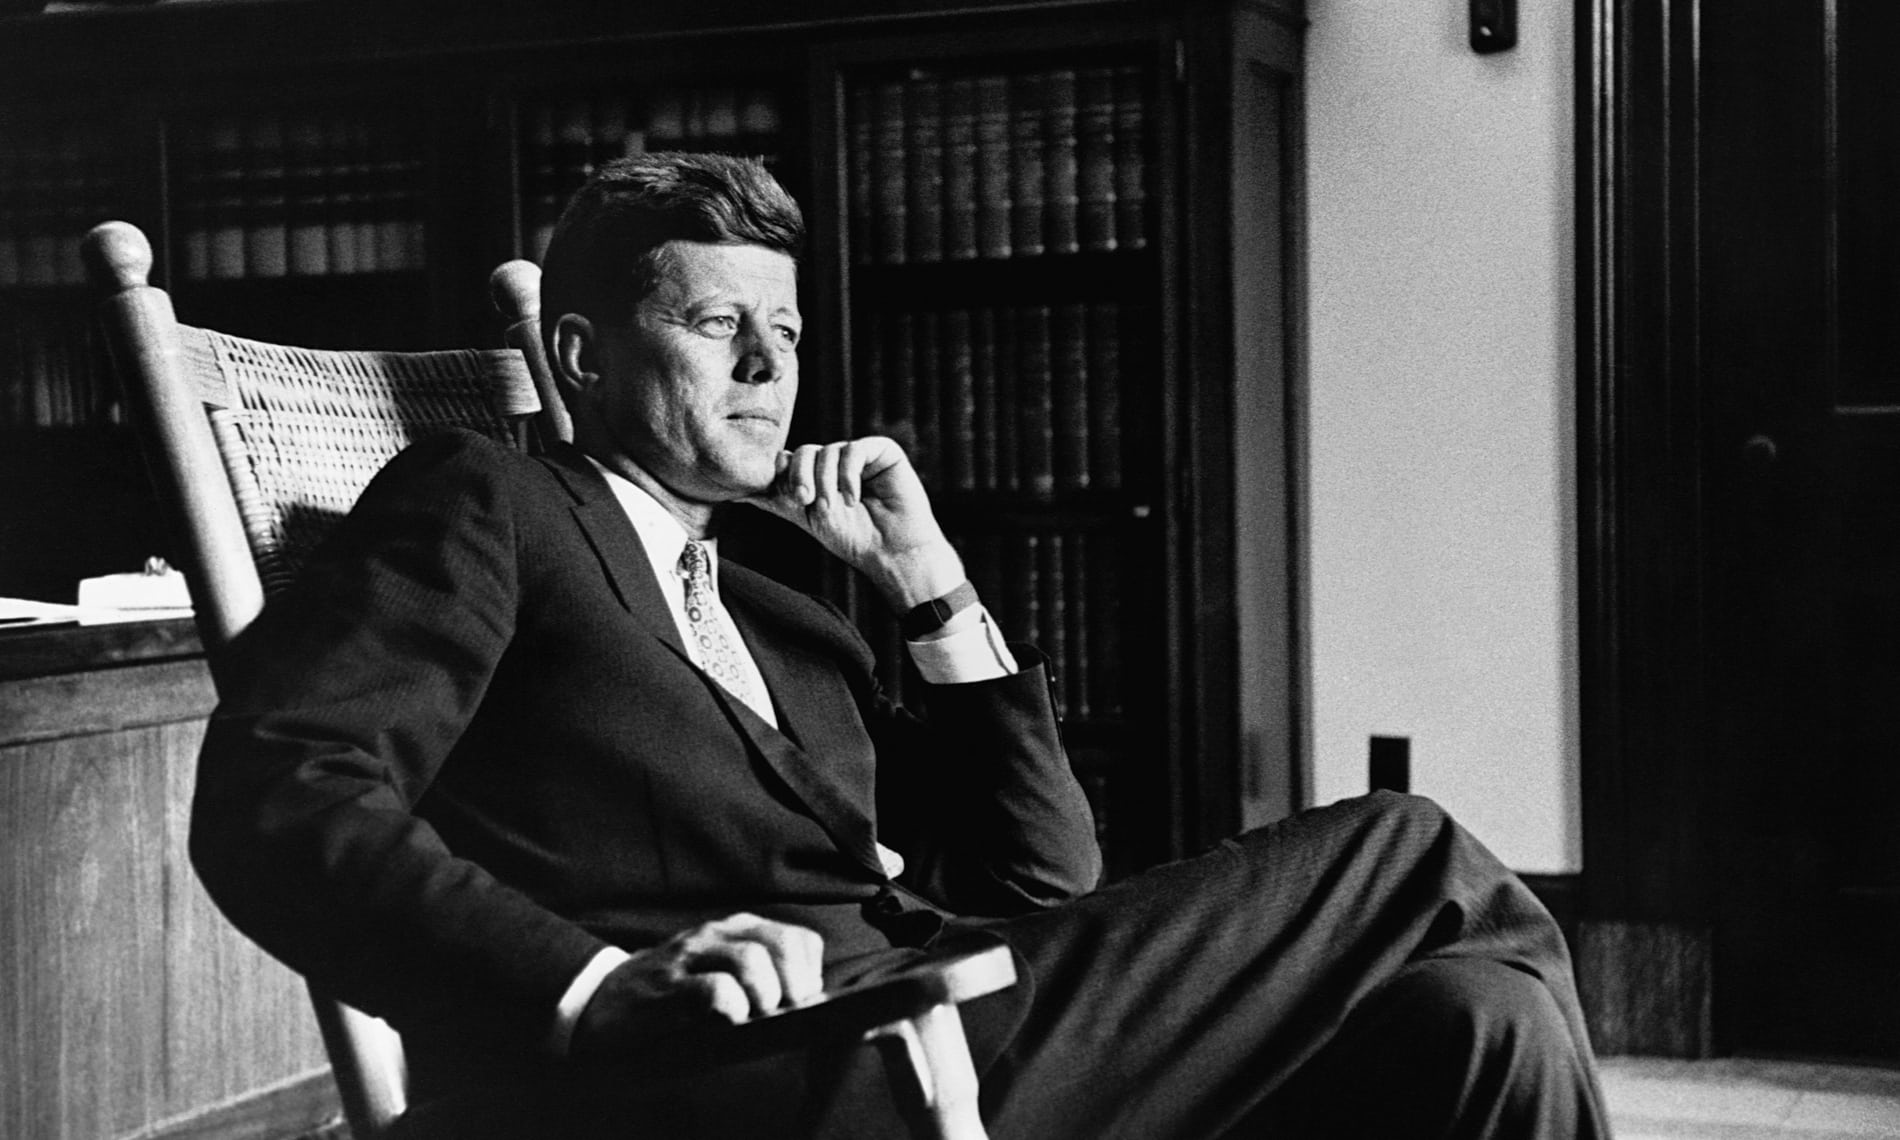 Magyar Éremkibocsátó Kft. - 100 éve született John F. Kennedy